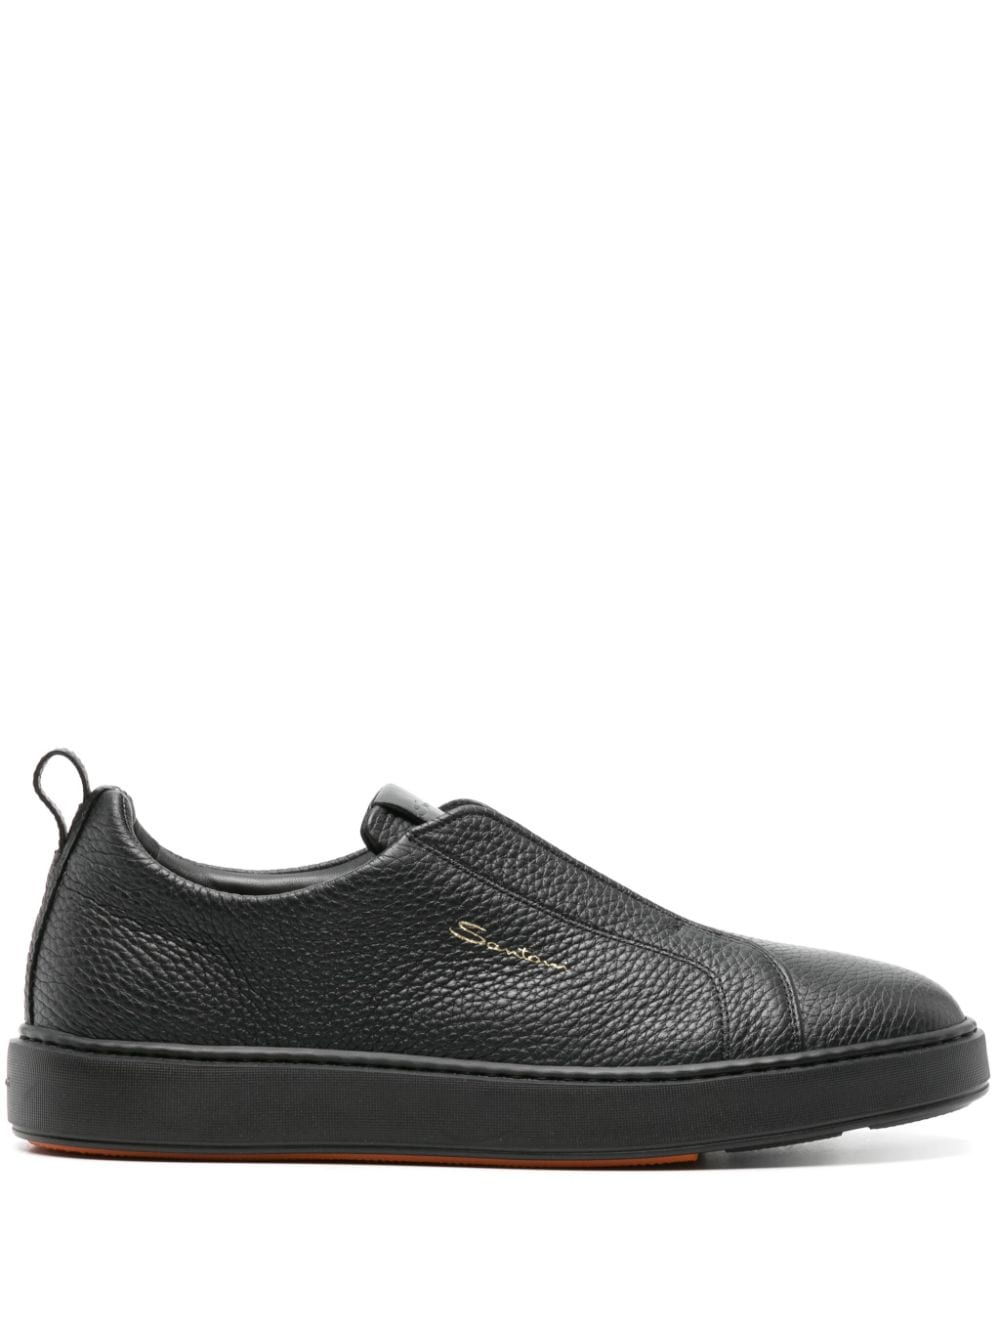 Santoni leather slip-on sneaker - Black von Santoni